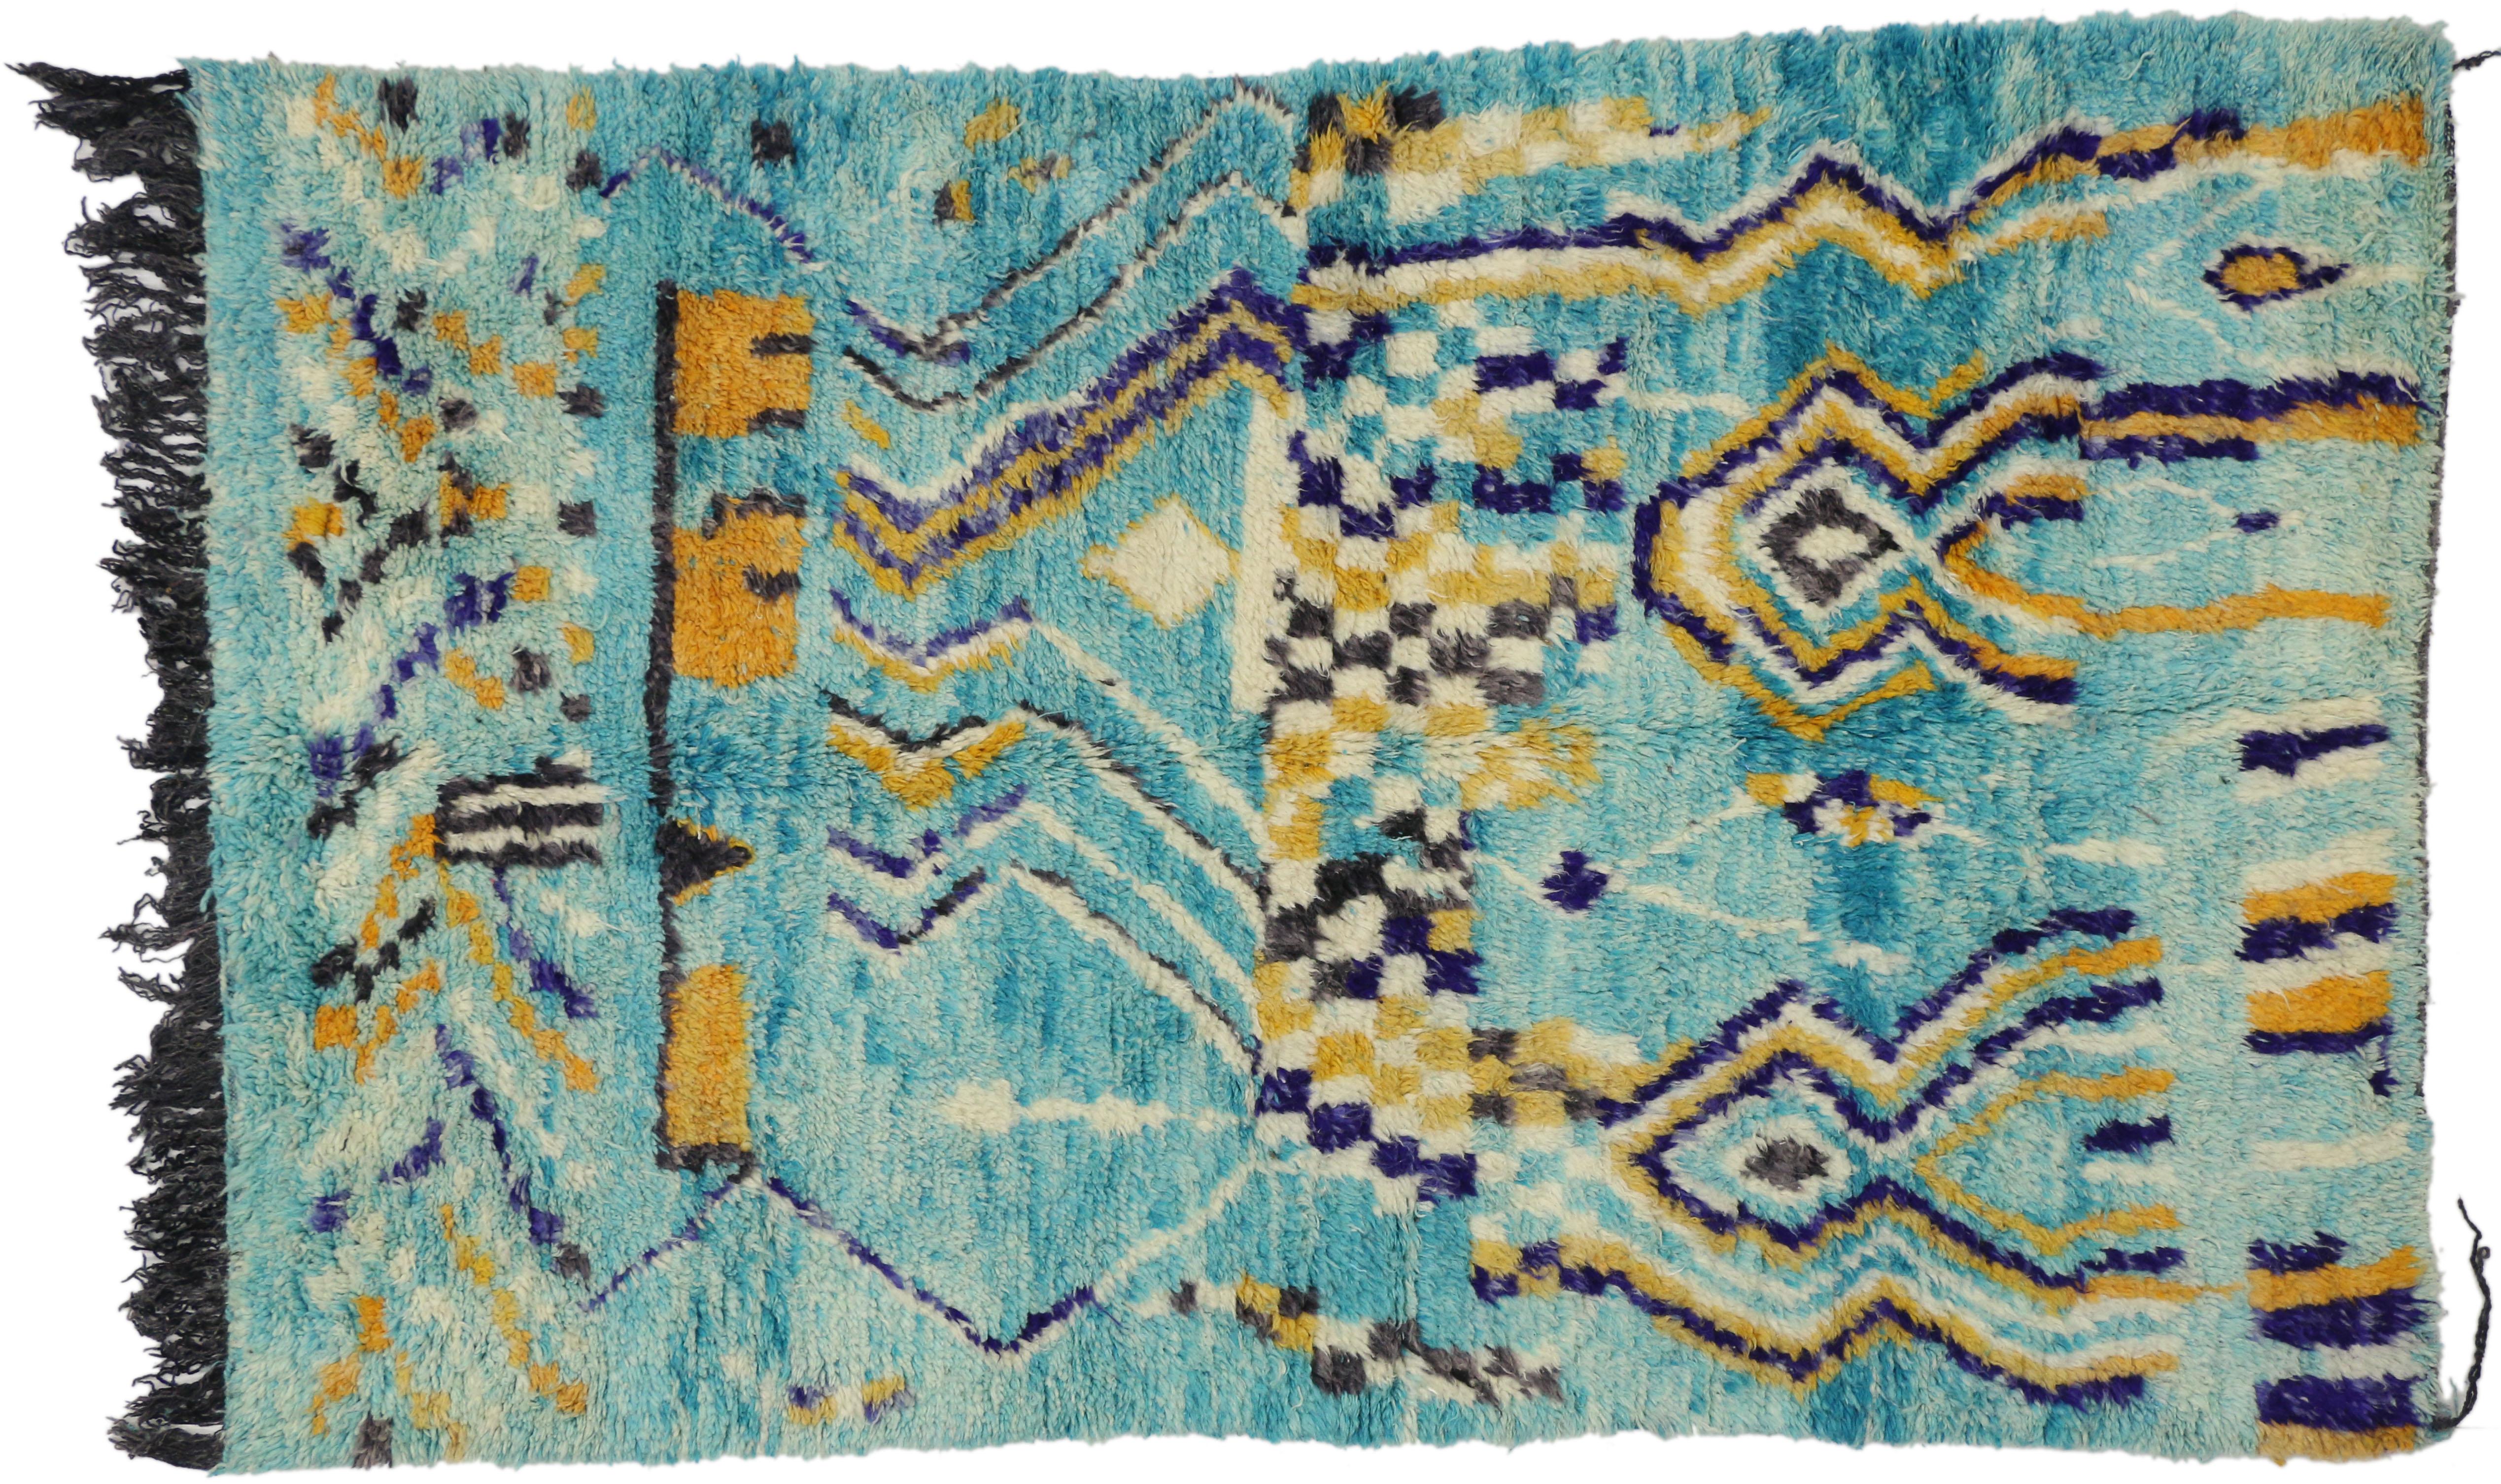 20711 Vintage Aqua Boujad Marokkanischer Teppich, 05'00 x 08'00. Die aus der marokkanischen Region Boujad stammenden Boujad-Teppiche sind exquisite handgewebte Meisterwerke, die das lebendige künstlerische Erbe der Berberstämme, insbesondere der